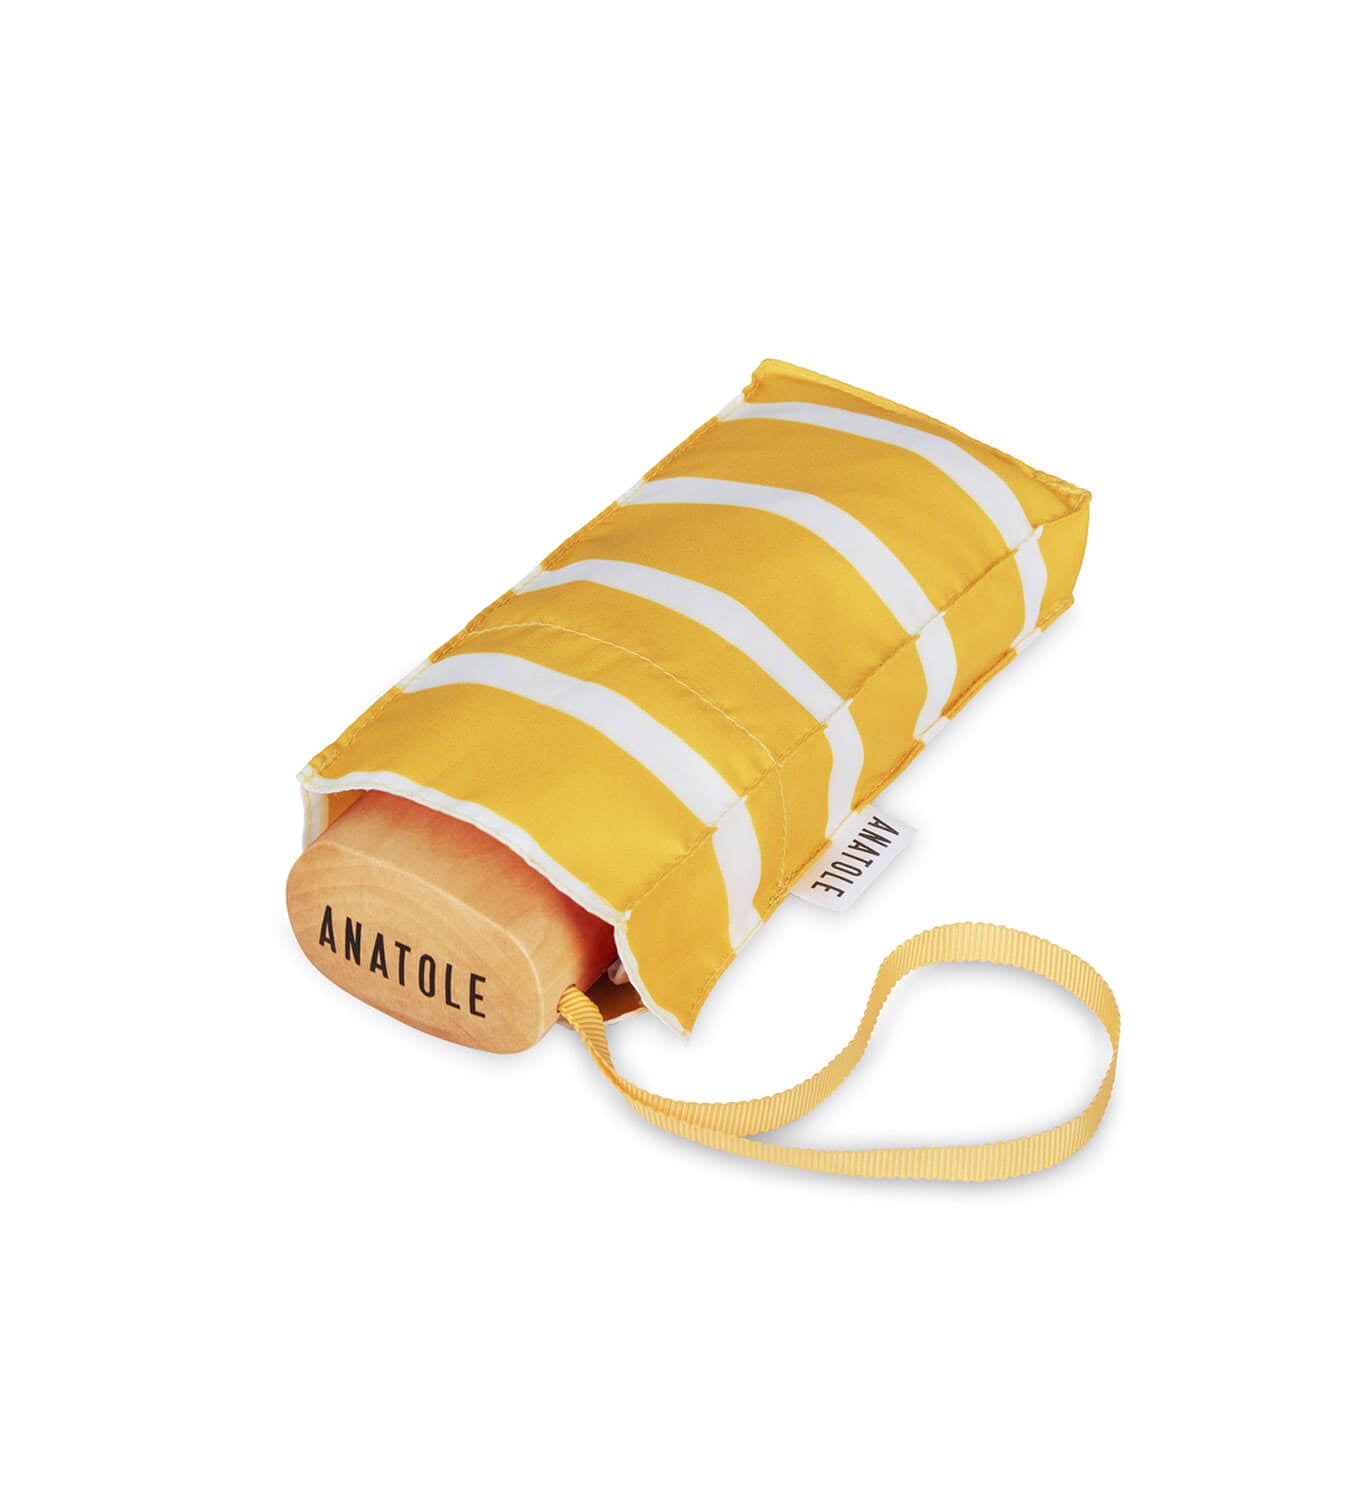 Anatole Striped Yellow Micro-Umbrella White Stripes GABIN